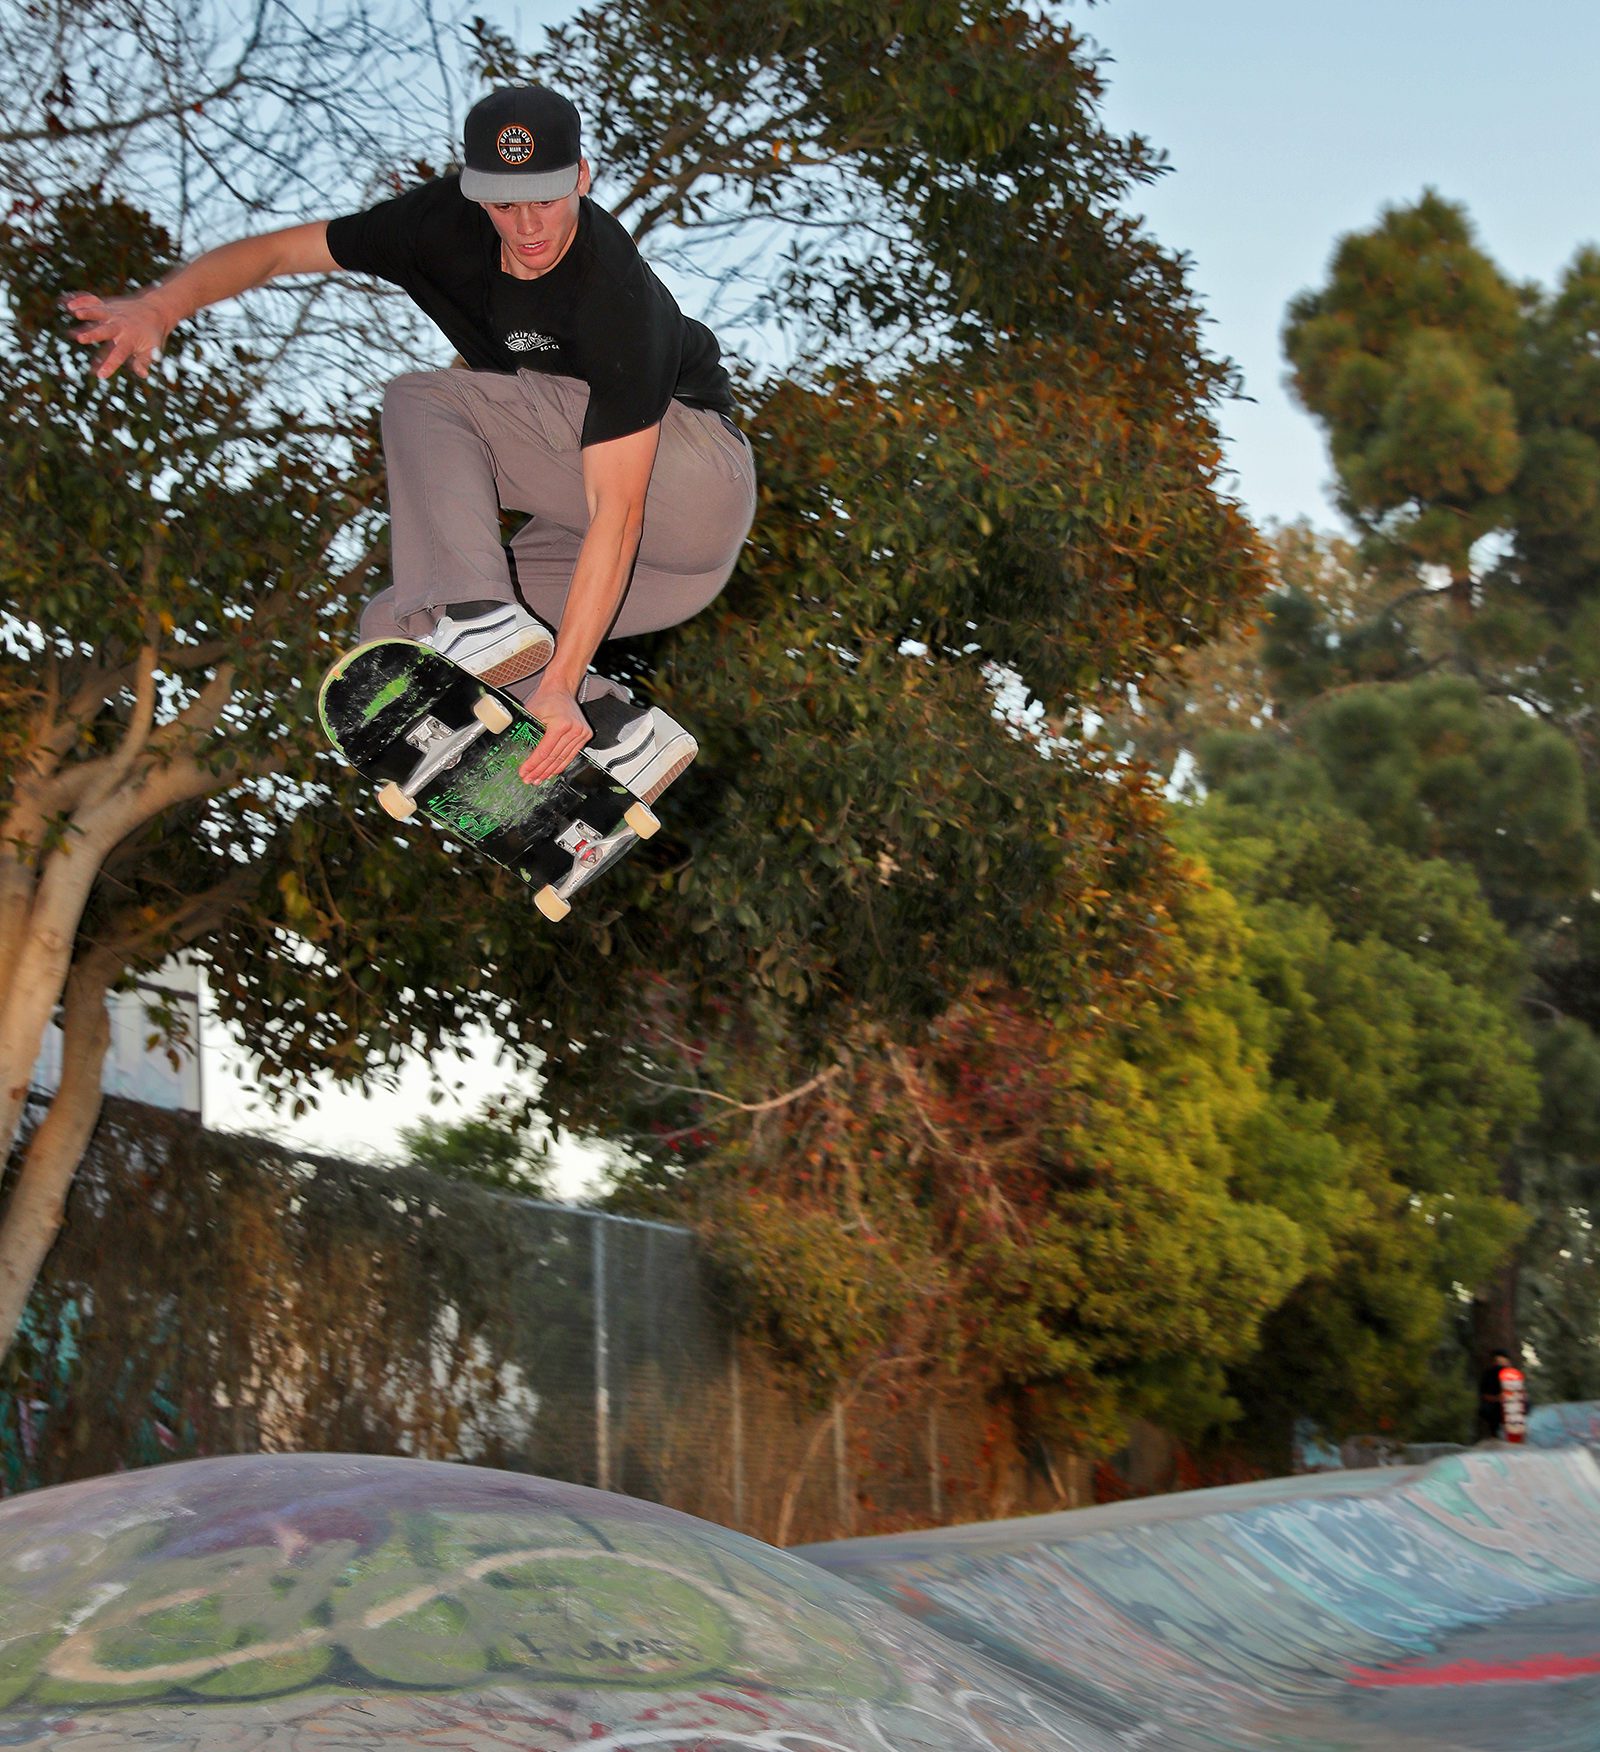 Skateboarder Nikki Rodger catching air at Derby Park in Santa Cruz